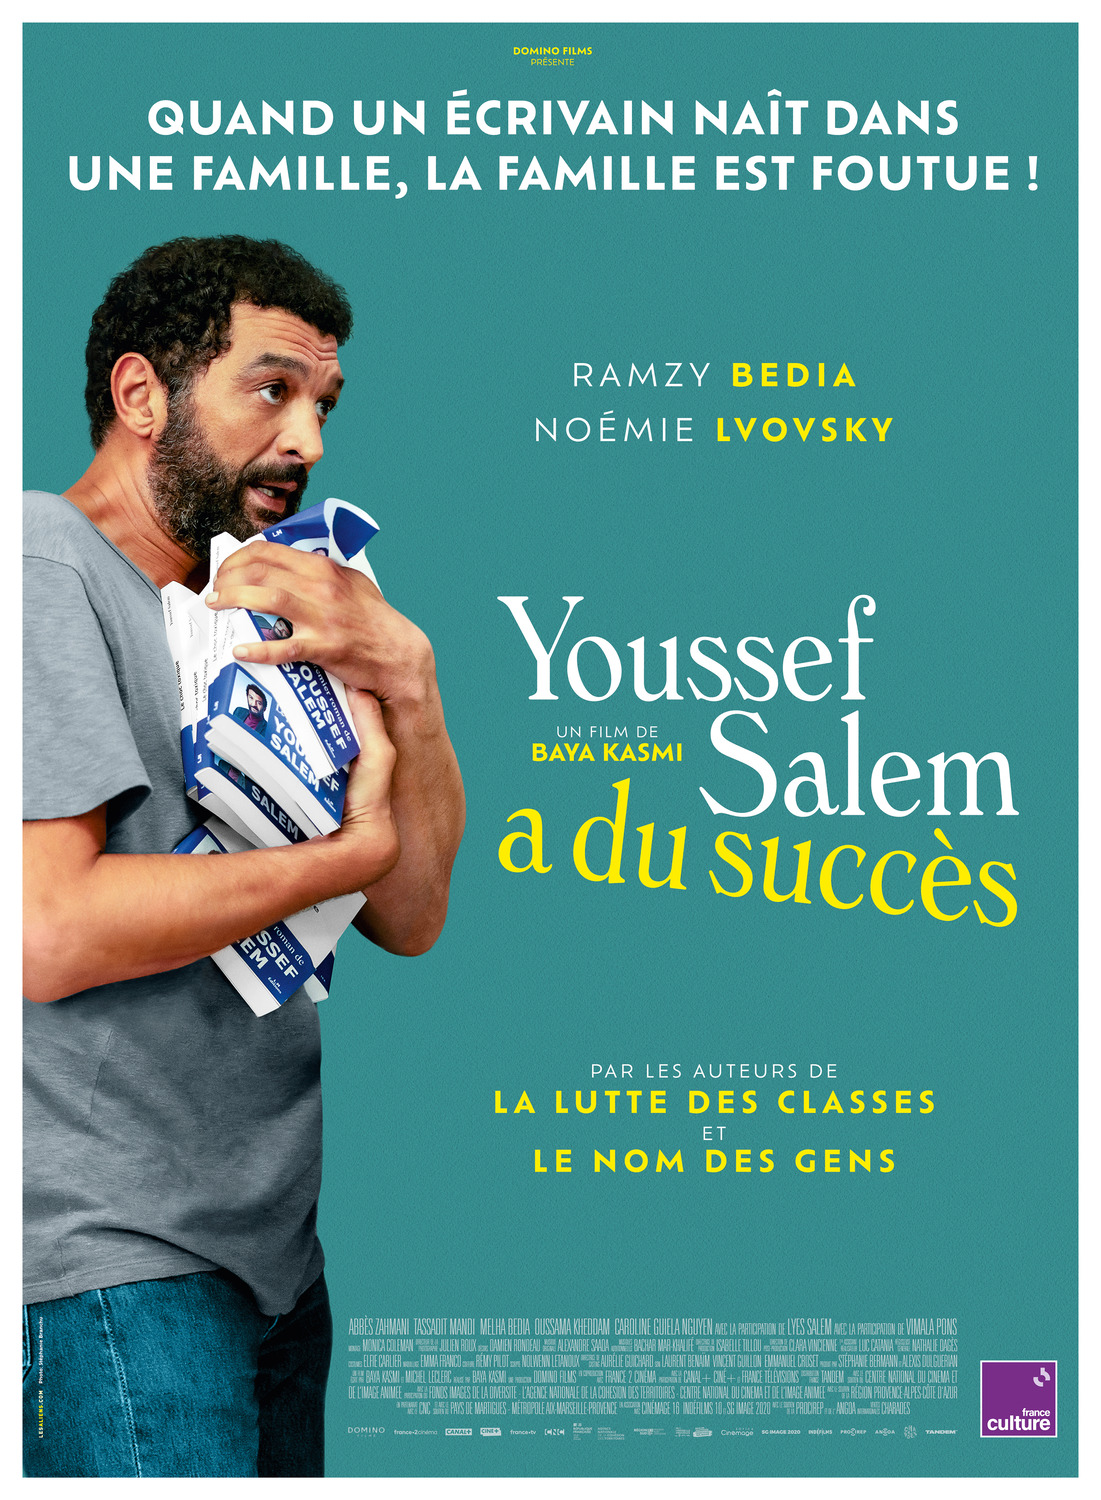 Extra Large Movie Poster Image for Youssef Salem a du succès 